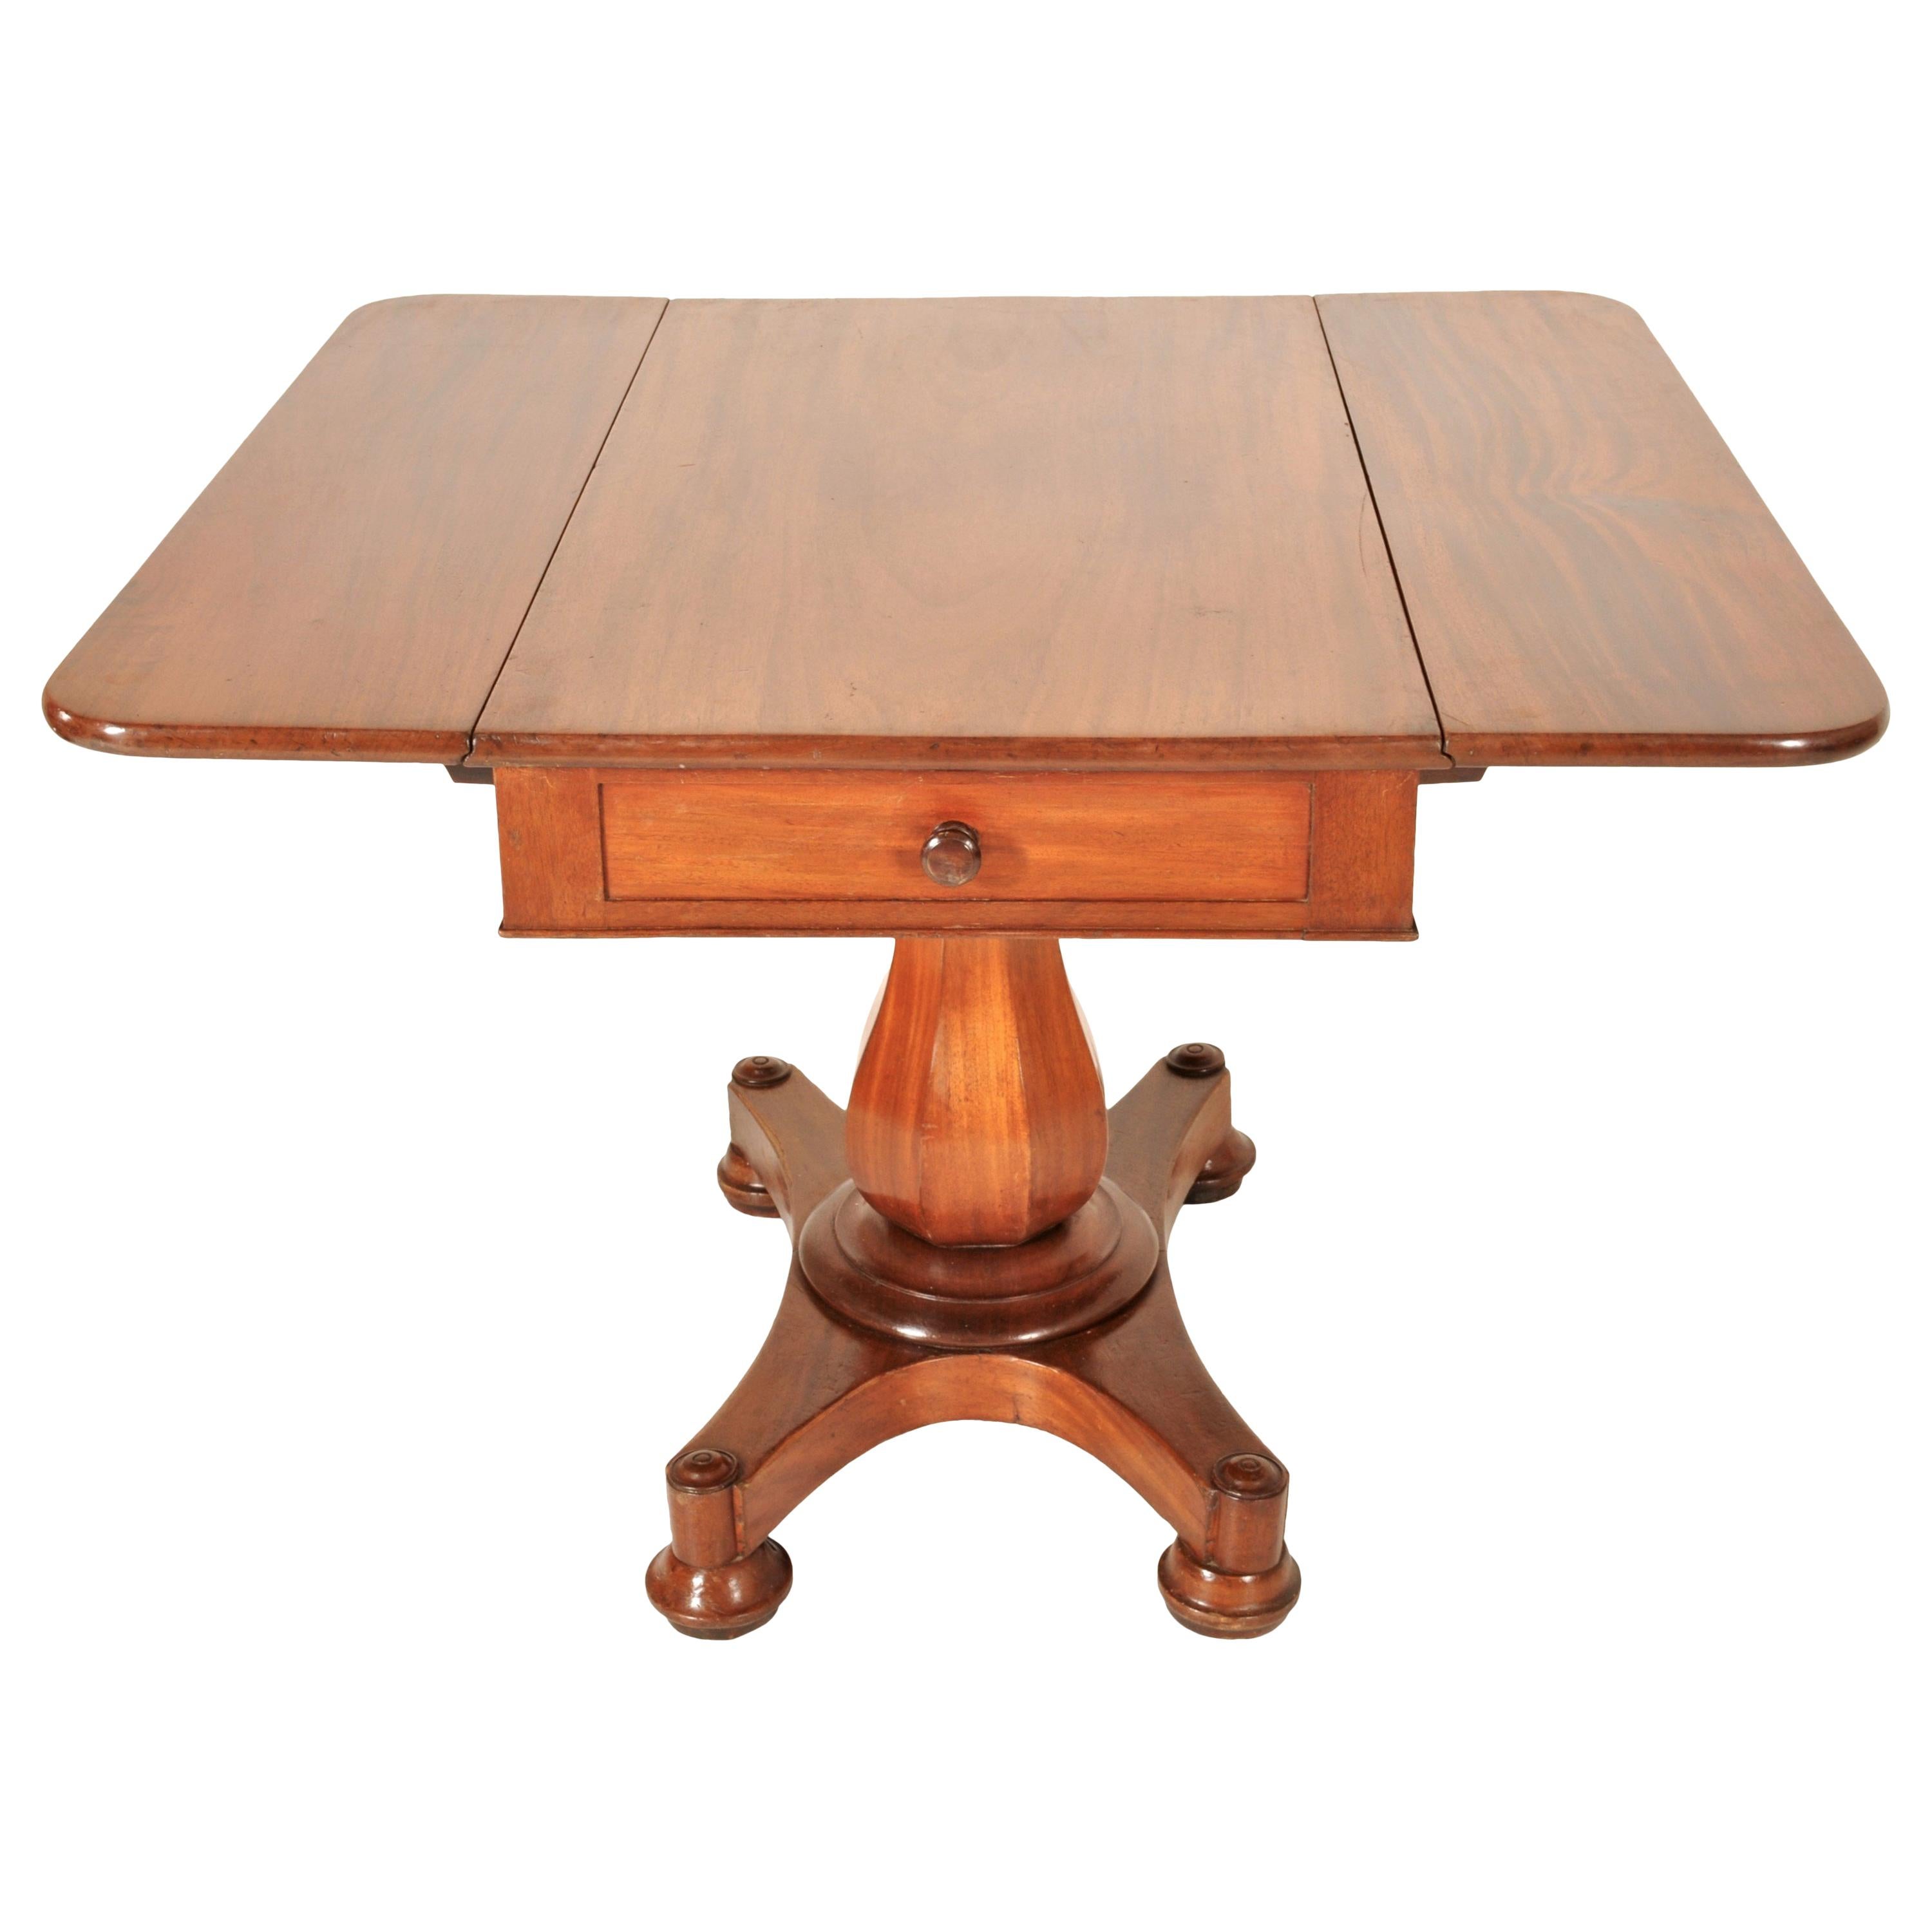 Antique American Classical Mahogany Drop Leaf Pedestal Pembroke Table circa 1840